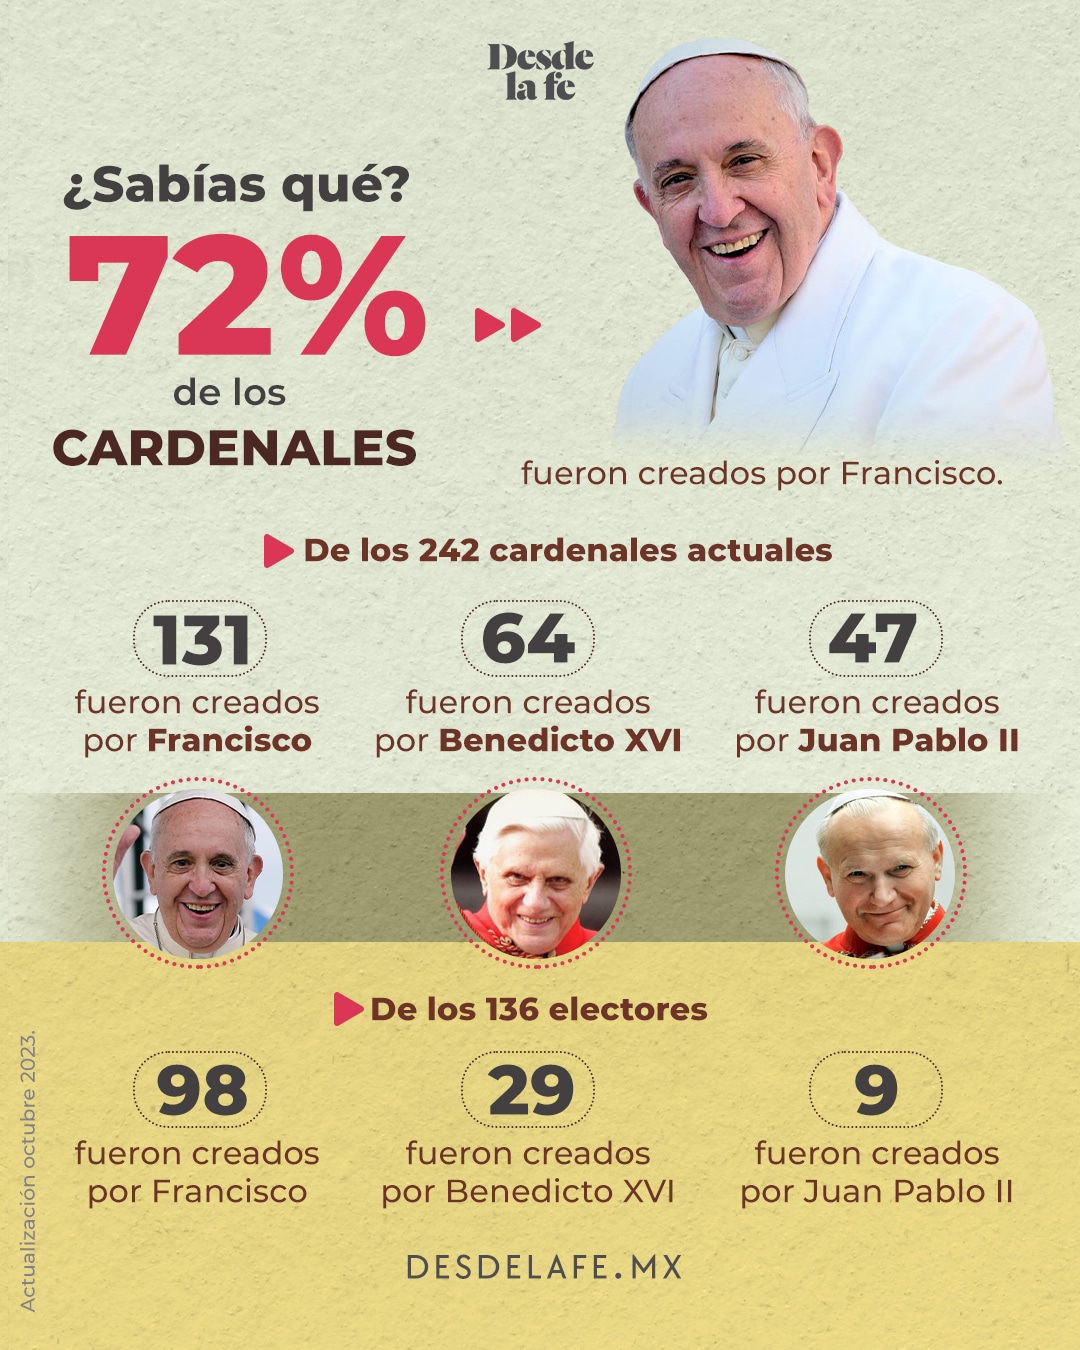 Cardenales creados por el Papa Francisco